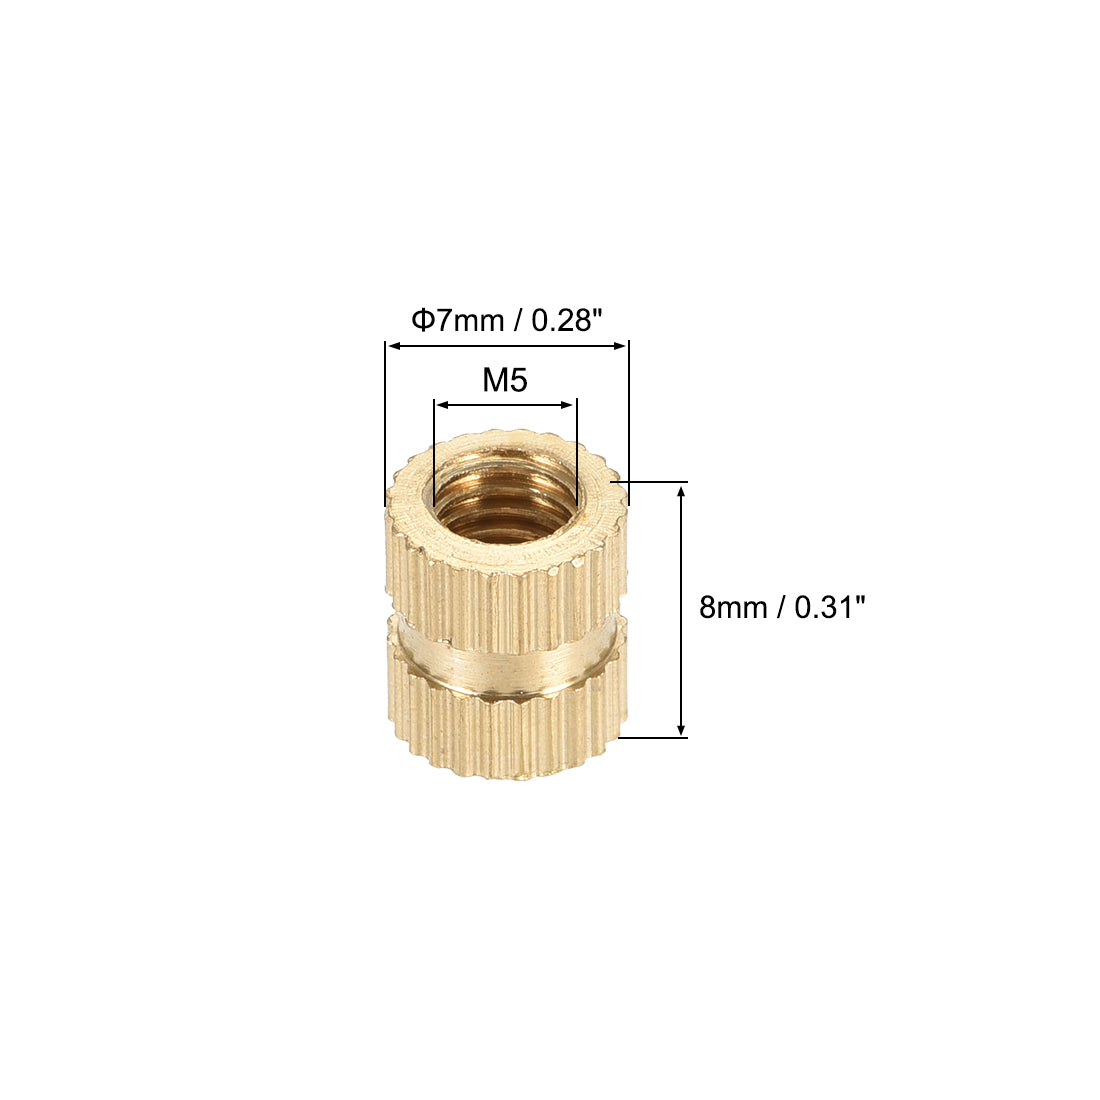 uxcell Uxcell Knurled Insert Nuts, M5 x 8mm(L) x 7mm(OD) Female Thread Brass Embedment Assortment Kit, 50 Pcs